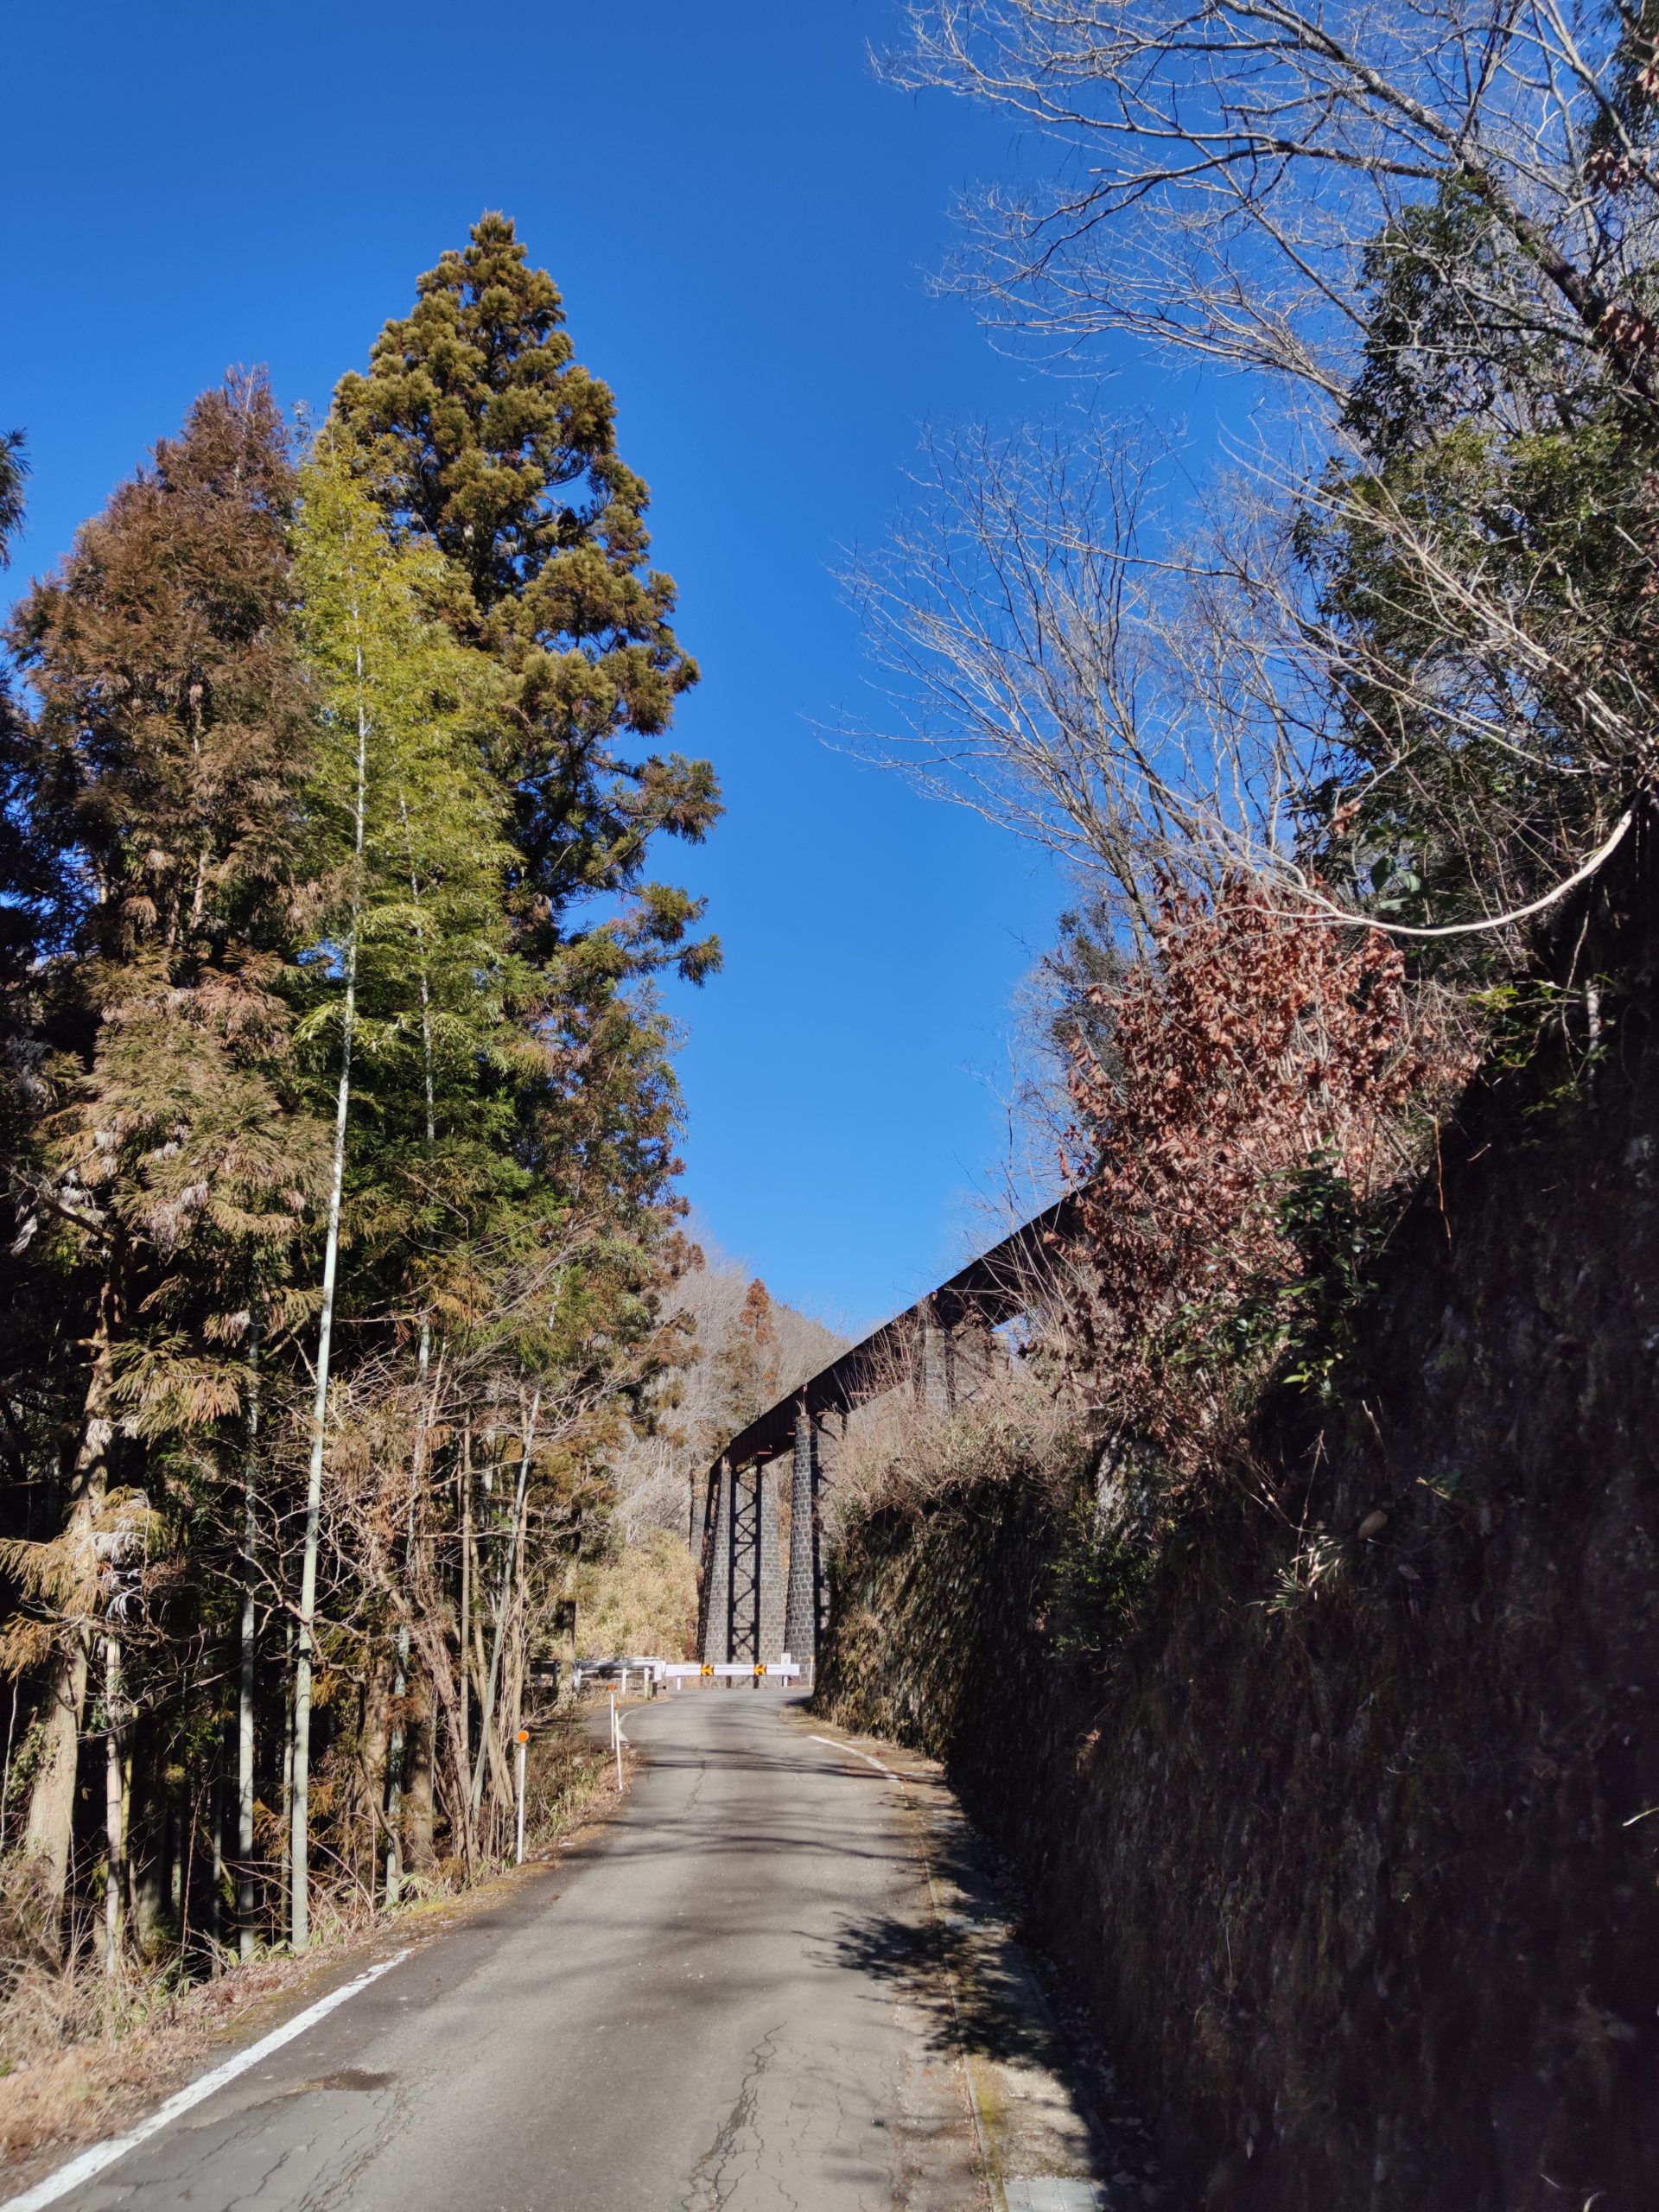 Ruins of the Kamiji Bridge of the Kita Ena Railway